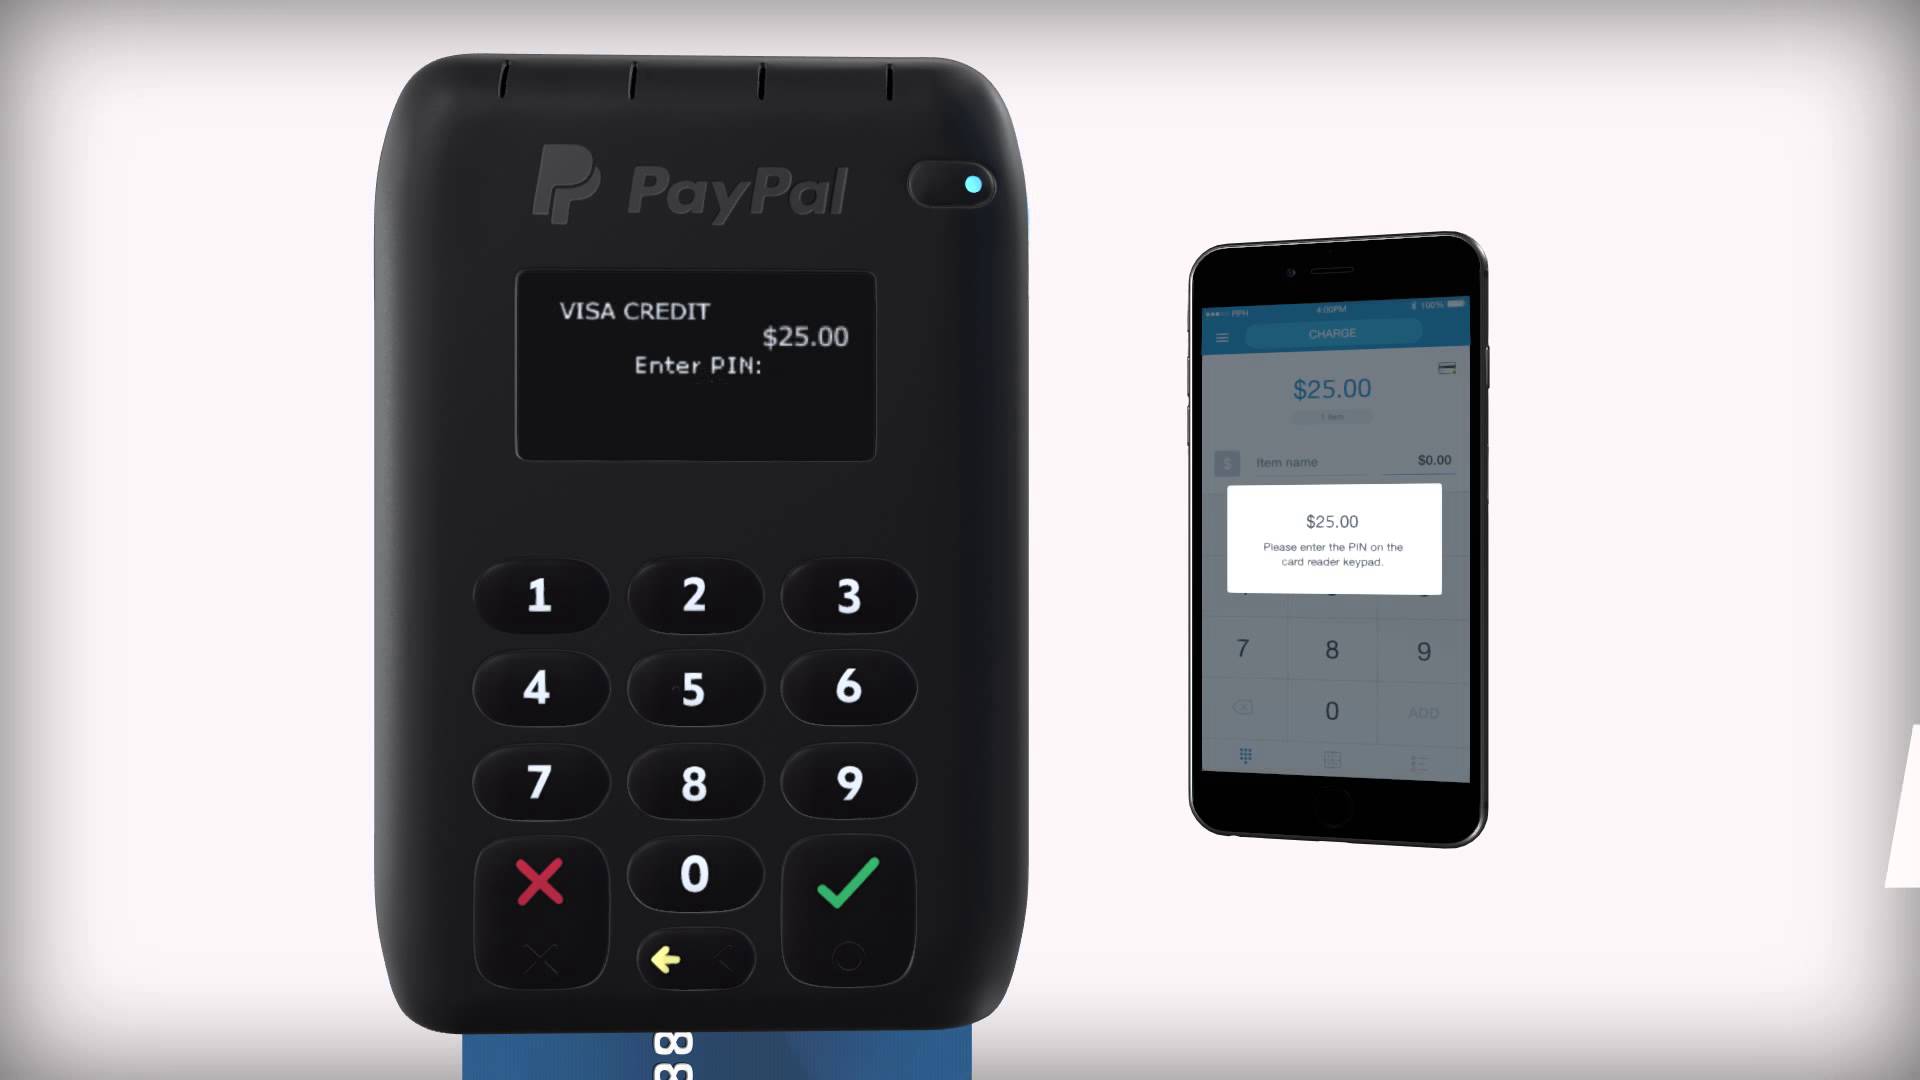 Tecnologia PIN on Mobile vai revolucionar o setor de pagamentos, segundo a MYPINPAD